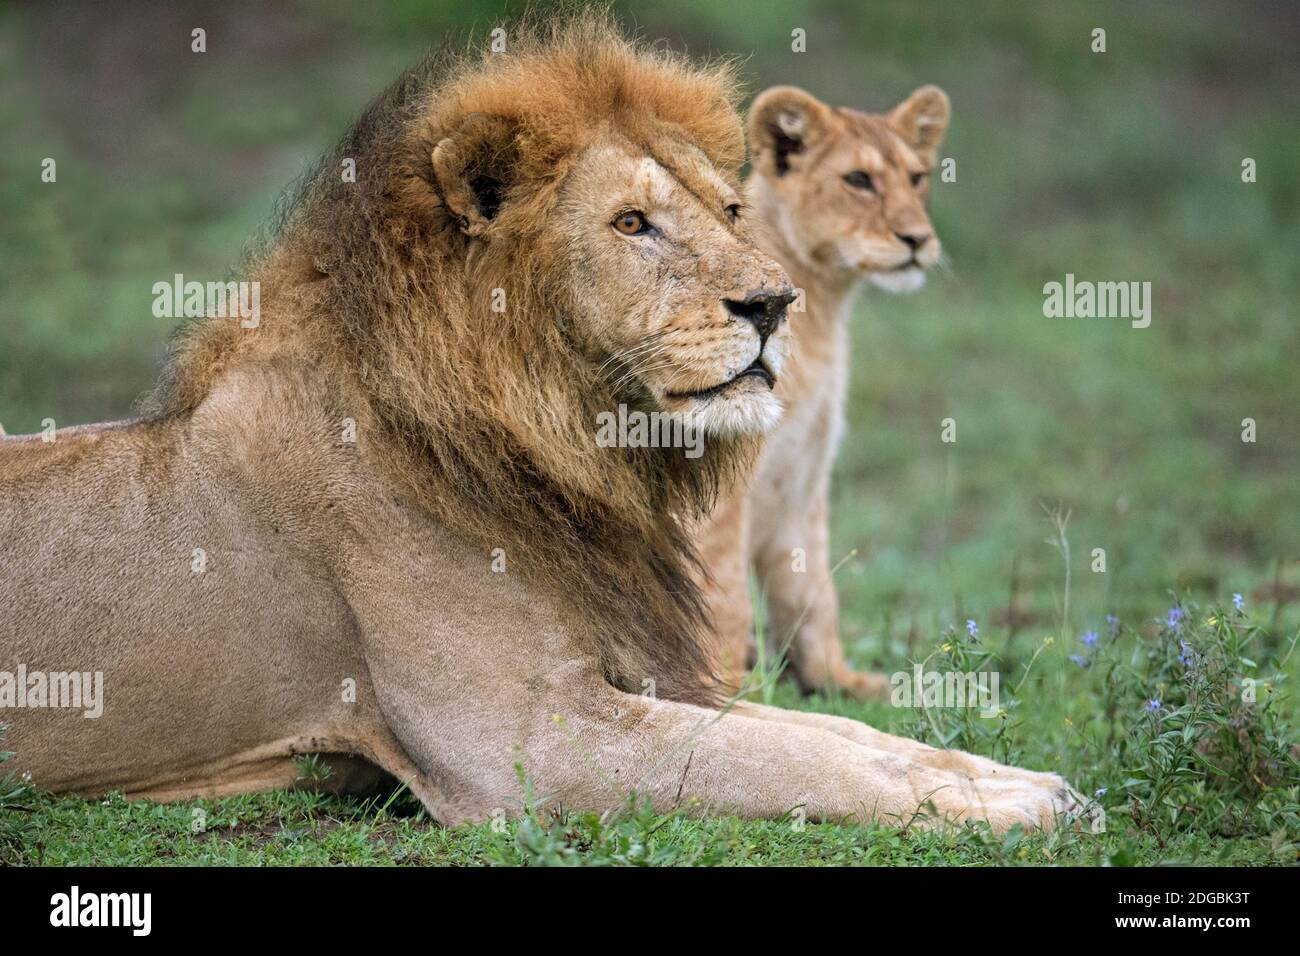 Lion africain (Panthera leo) avec son cub, Ndutu, zone de conservation de Ngorongoro, Tanzanie Banque D'Images